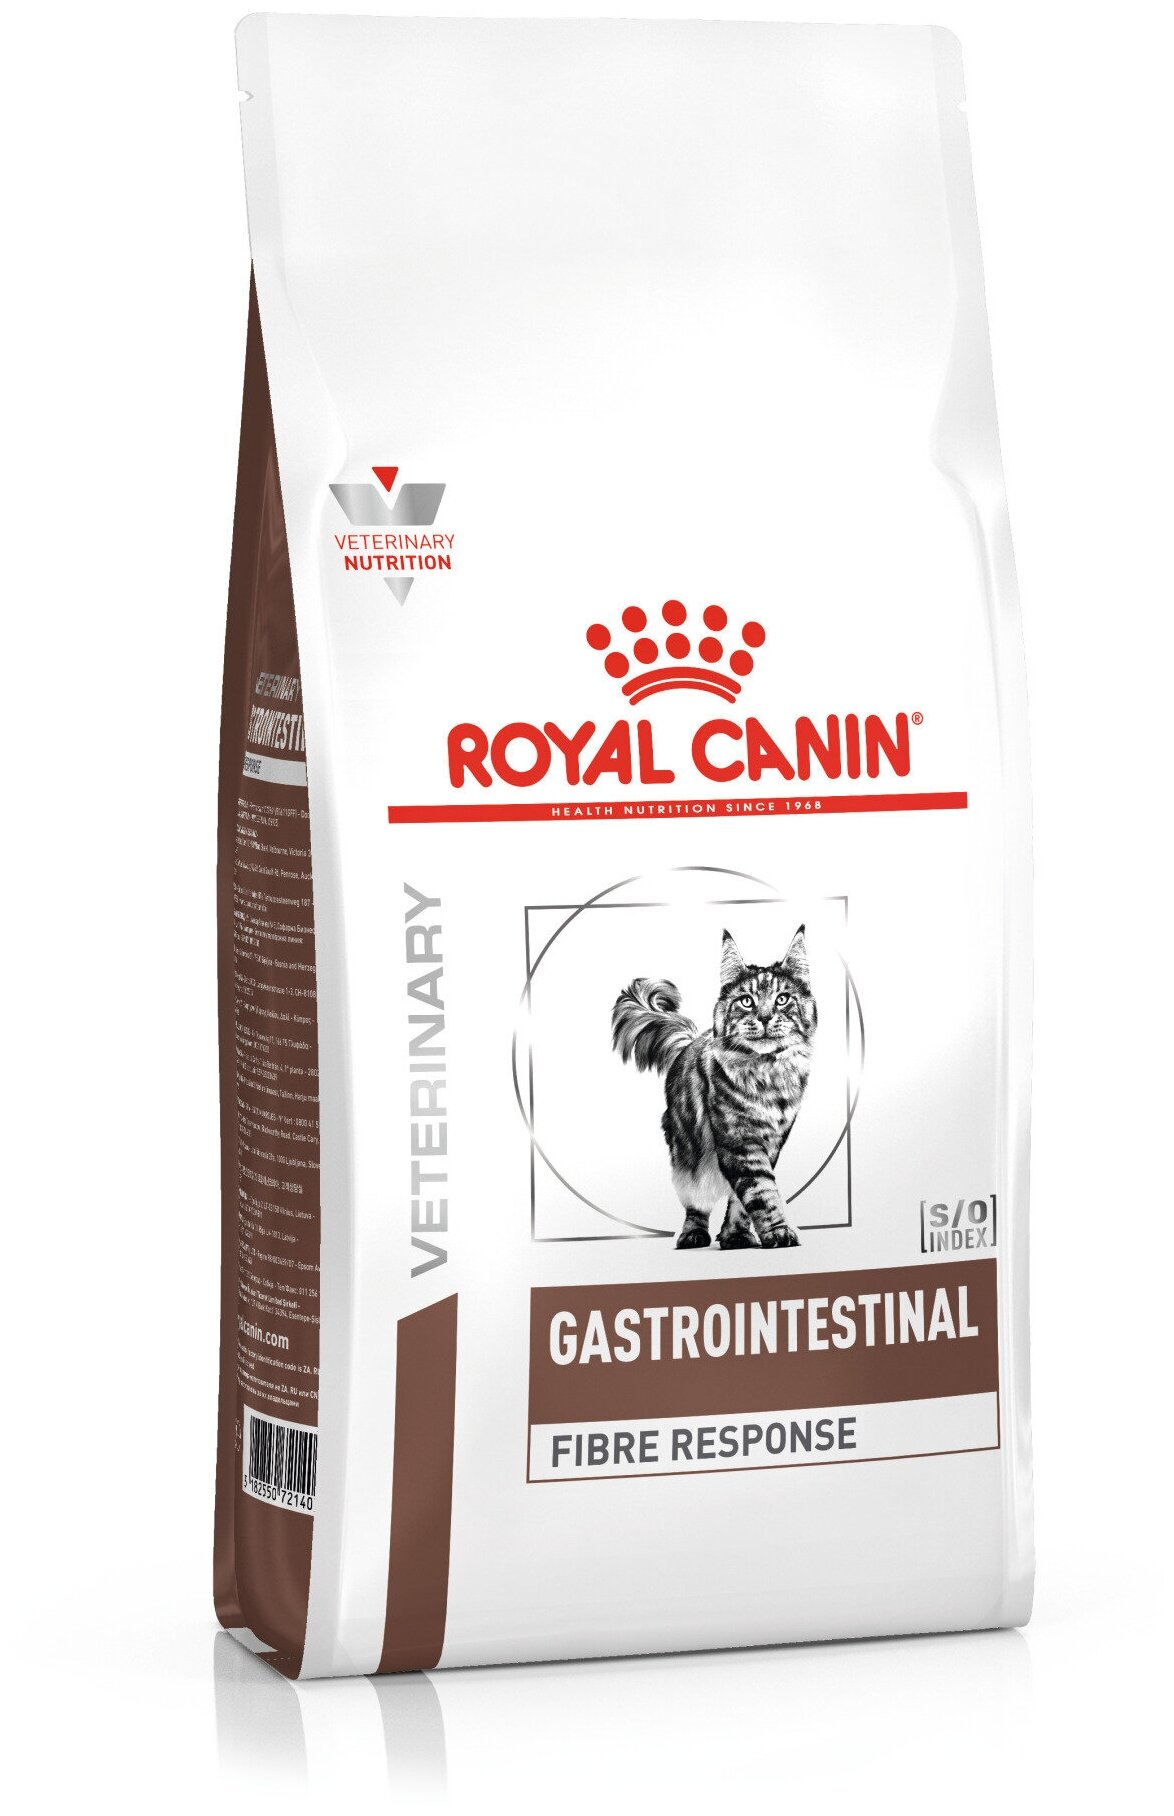 ROYAL CANIN VD GASTRO INTESTINAL FIBRE RESPONSE FR31 400 г ветеринарная диета для кошек при острых и хронических запорах 2шт